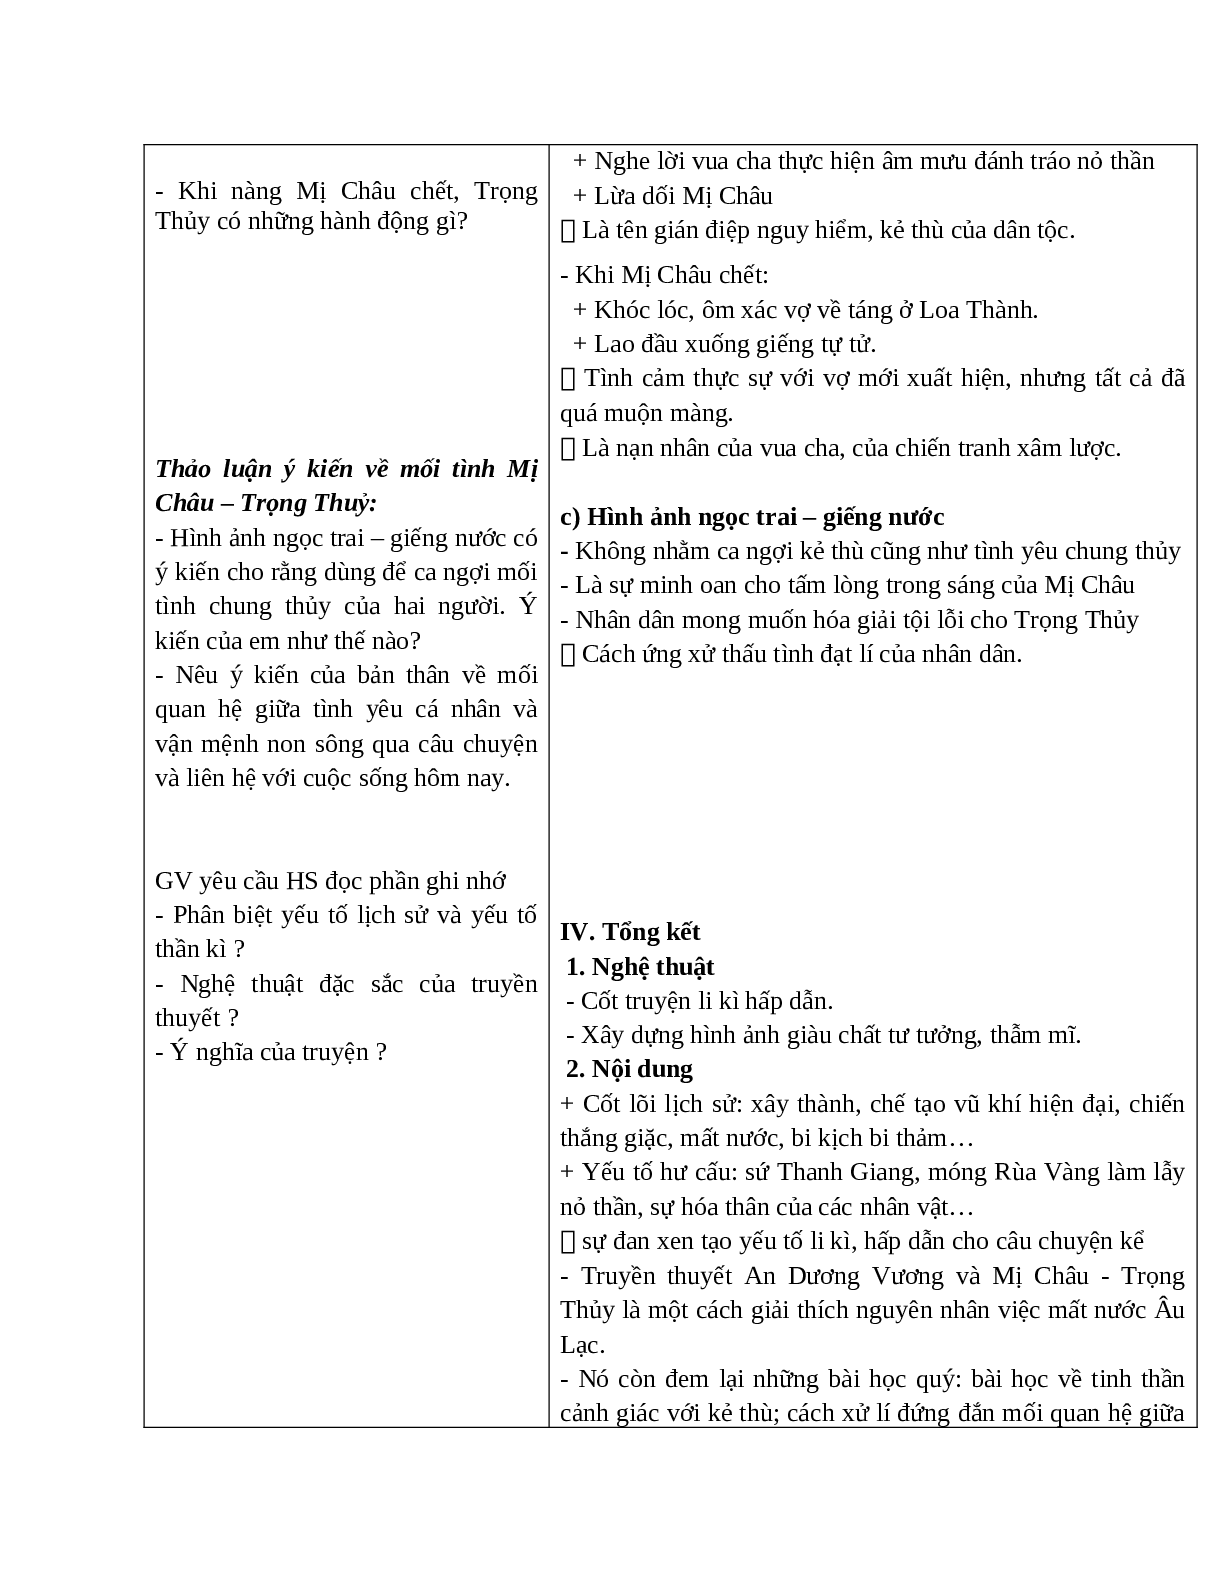 Giáo án Ngữ văn 10, tập 1, bài Truyện An Dương Vương và Mị Châu - Trọng Thủy (tiết 2)mới nhất (trang 5)